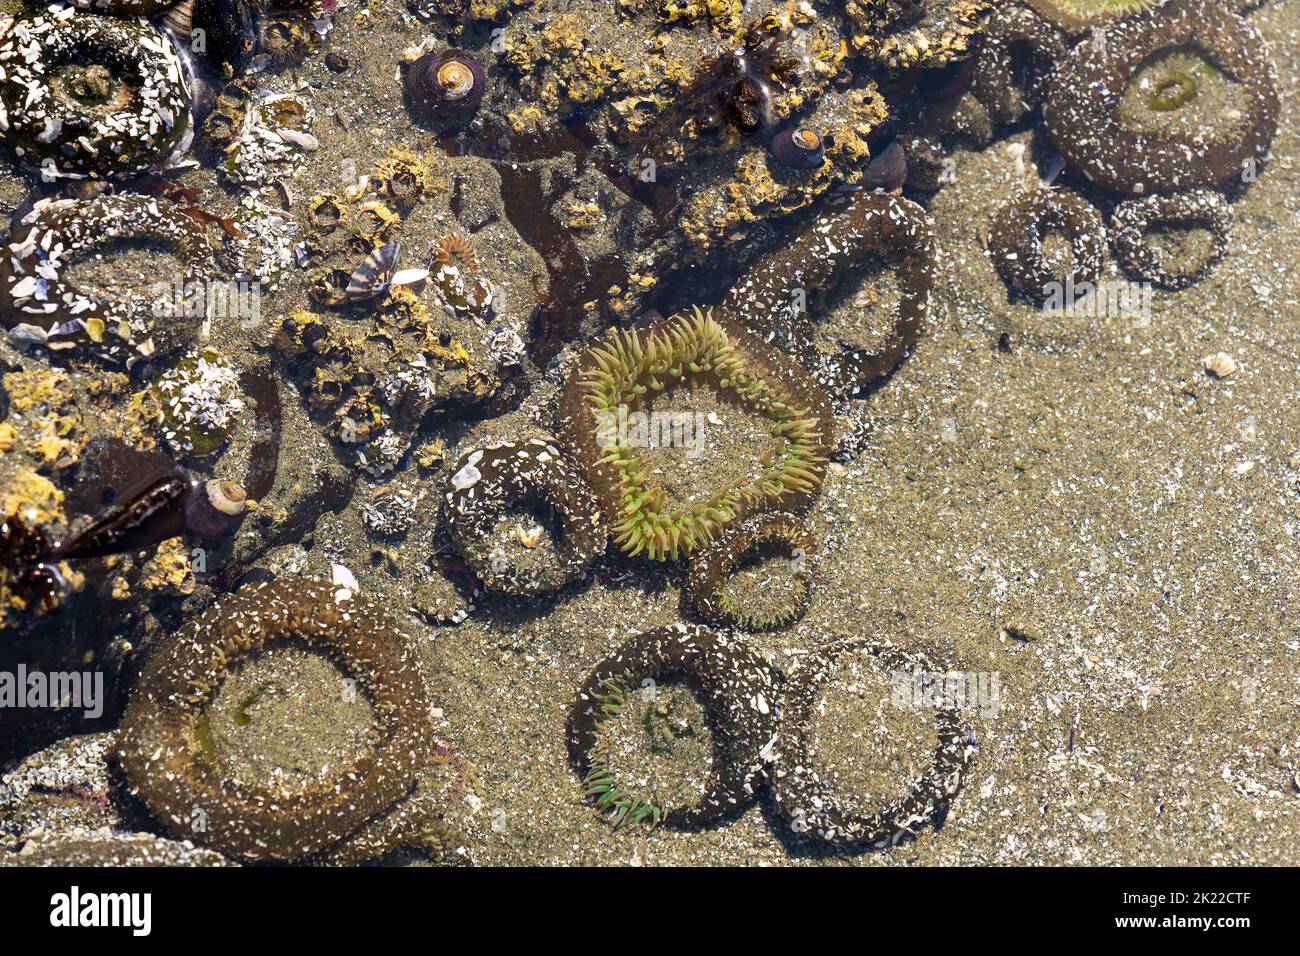 Sea anemones at low tide, Chesterman Beach, Tofino, Vancouver Island, Canada. Stock Photo